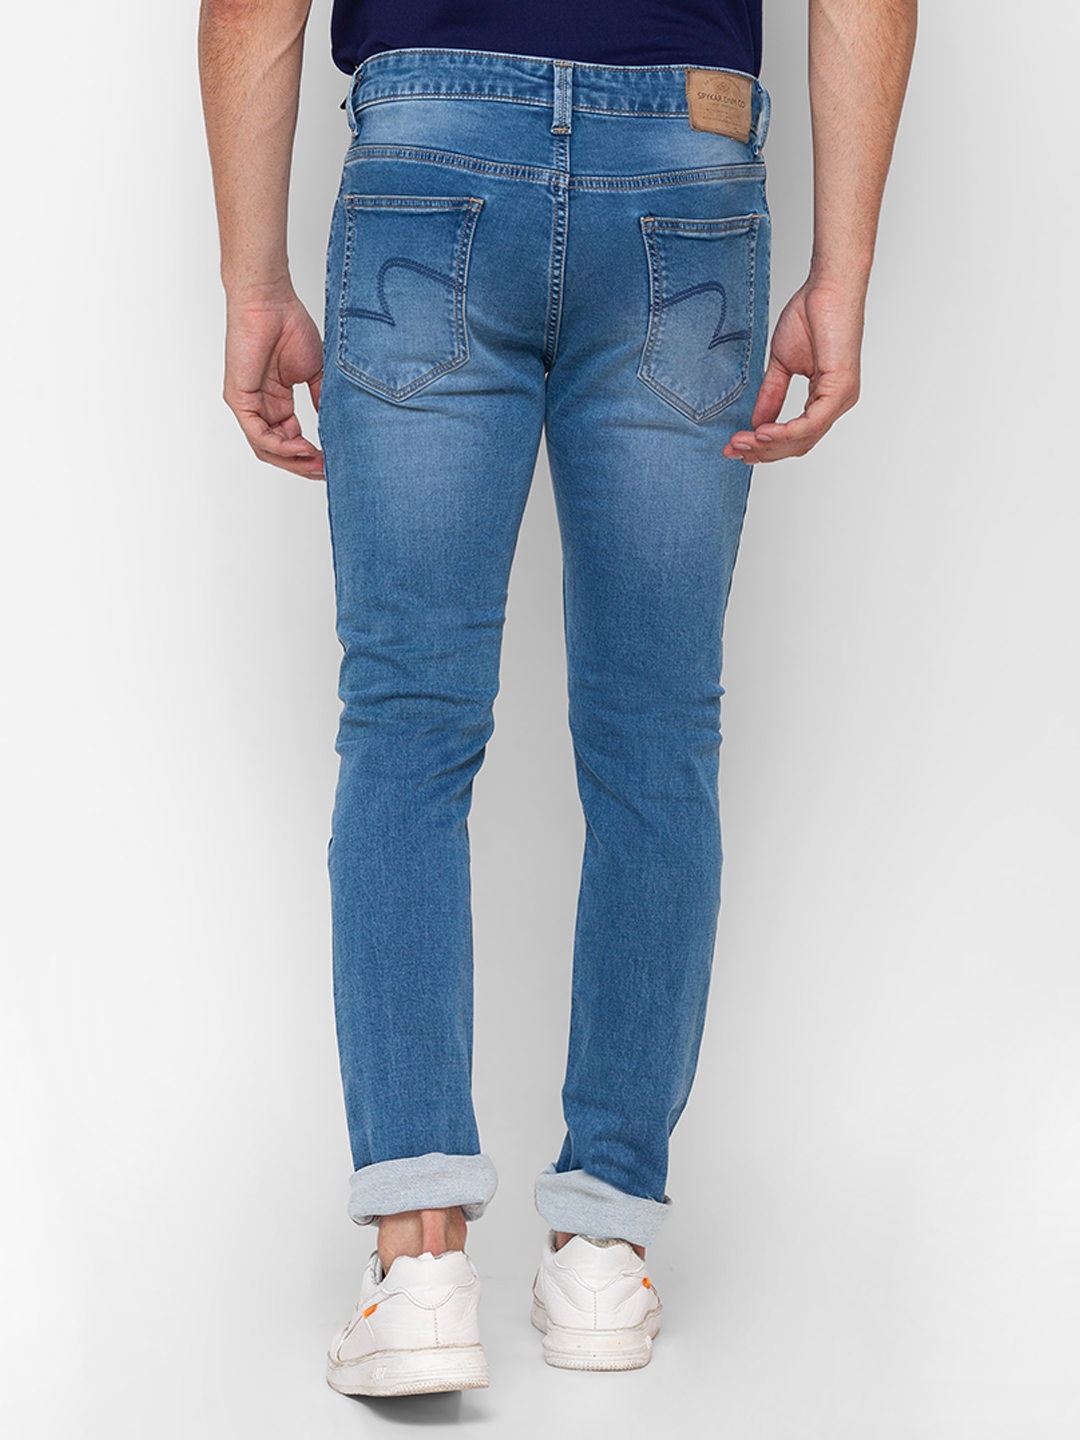 Spykar Light Blue Cotton Slim Fit Narrow Length Jeans For Men (Skinny) -  skn02bb16ltblue